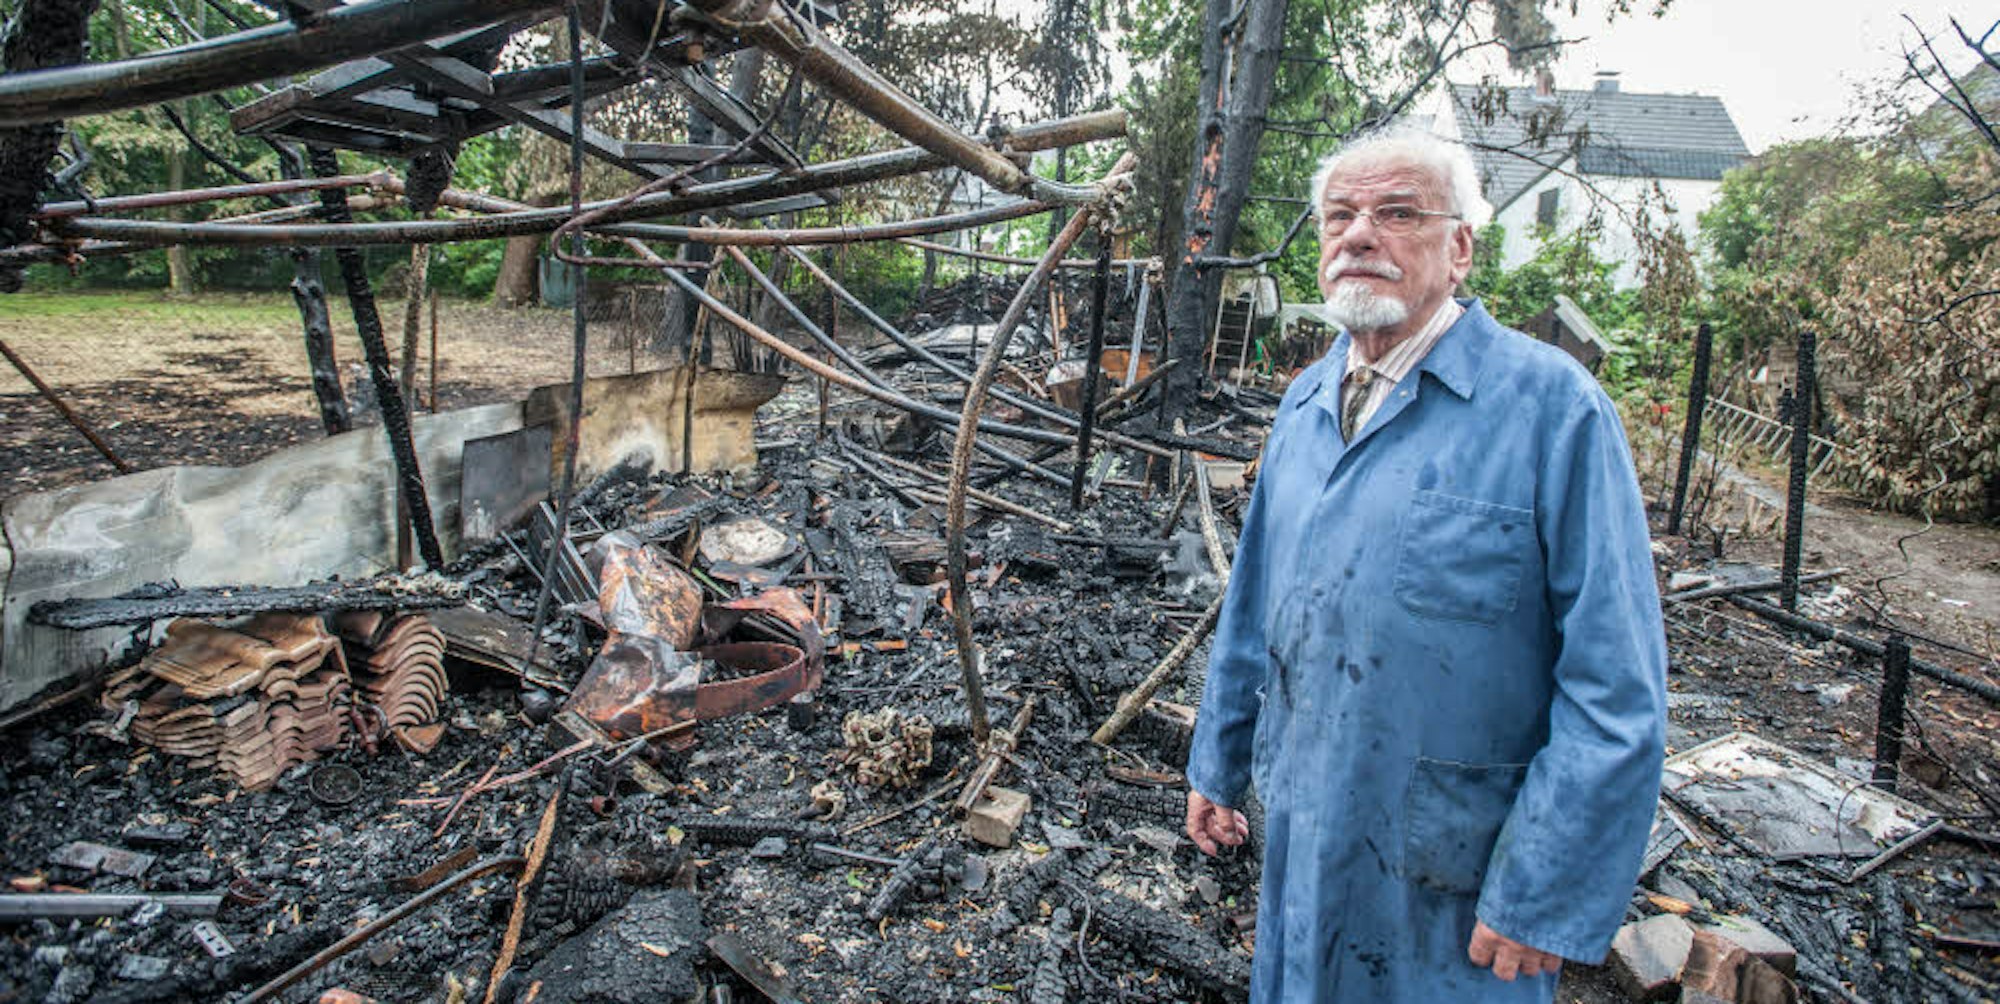 Konrad Kappek steht in den Trümmern seines ehemals großen Bienenstands. Darin verbrannten 500.000 Tiere.